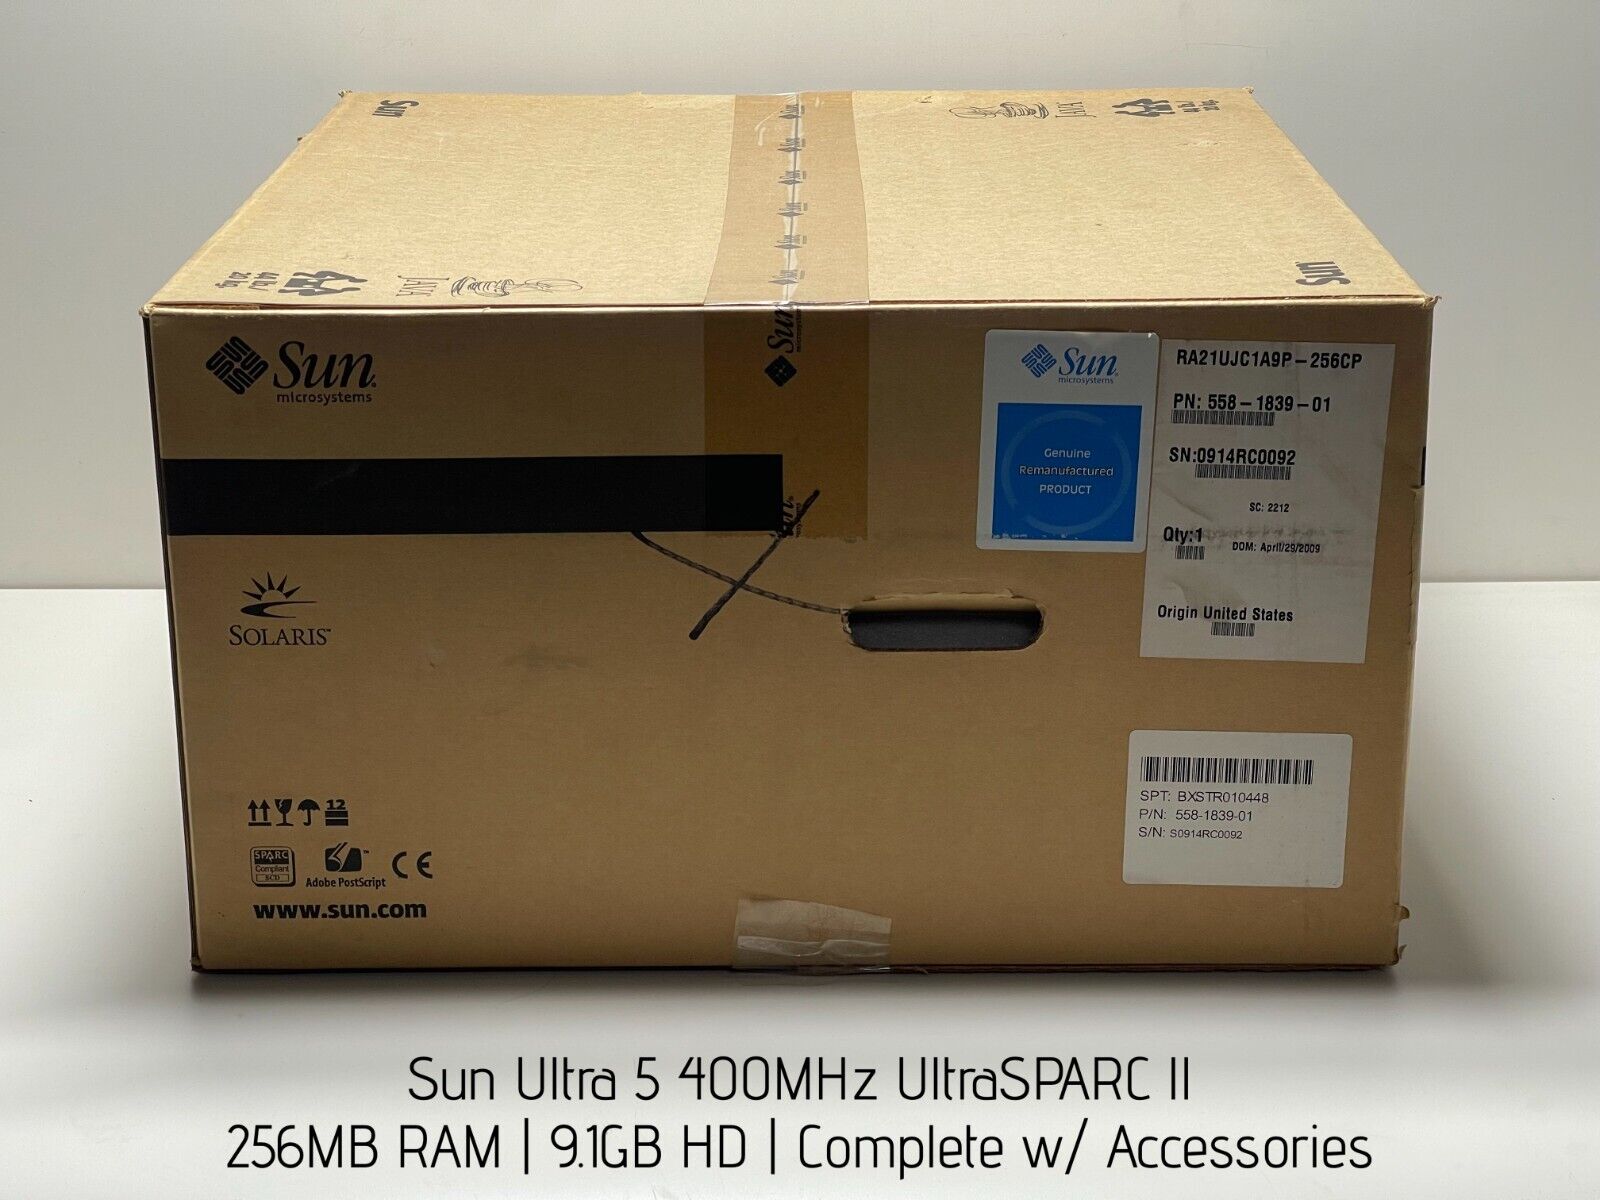 Sun Ultra 5 400MHz UltraSPARC II, 256MB RAM, 9.1GB HD, Complete w/ Accessories